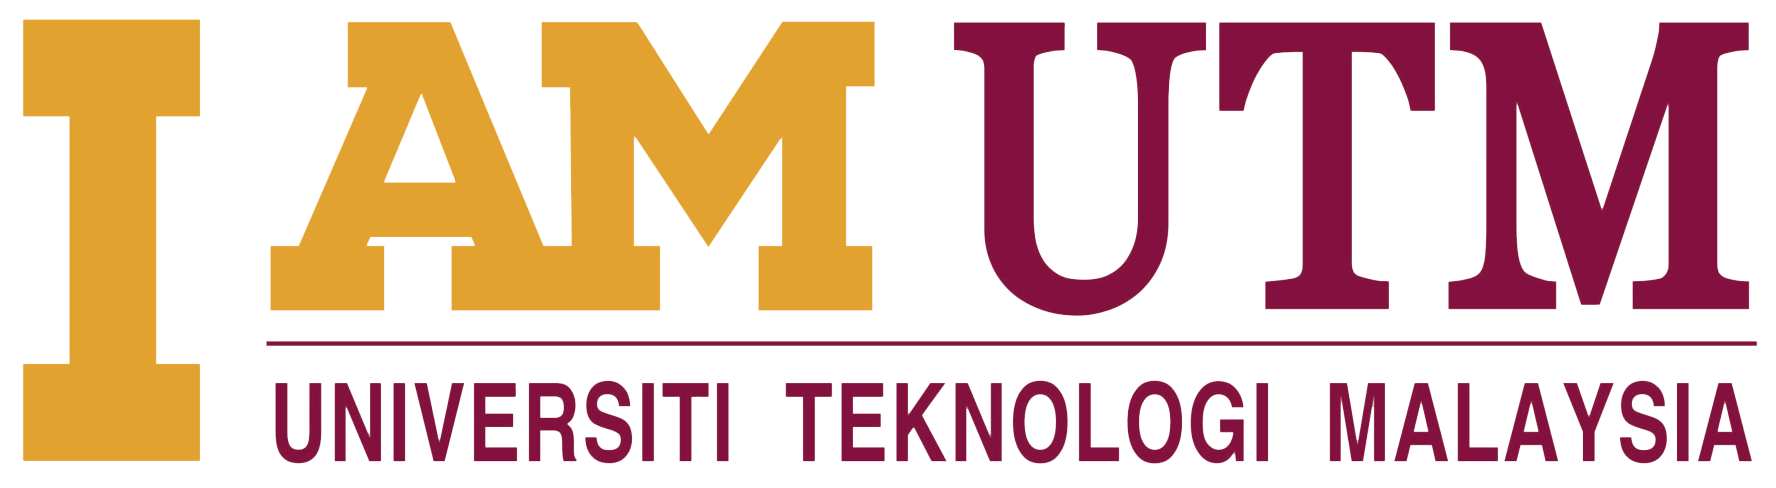 UTM Logo - UTM Brand | Universiti Teknologi Malaysia